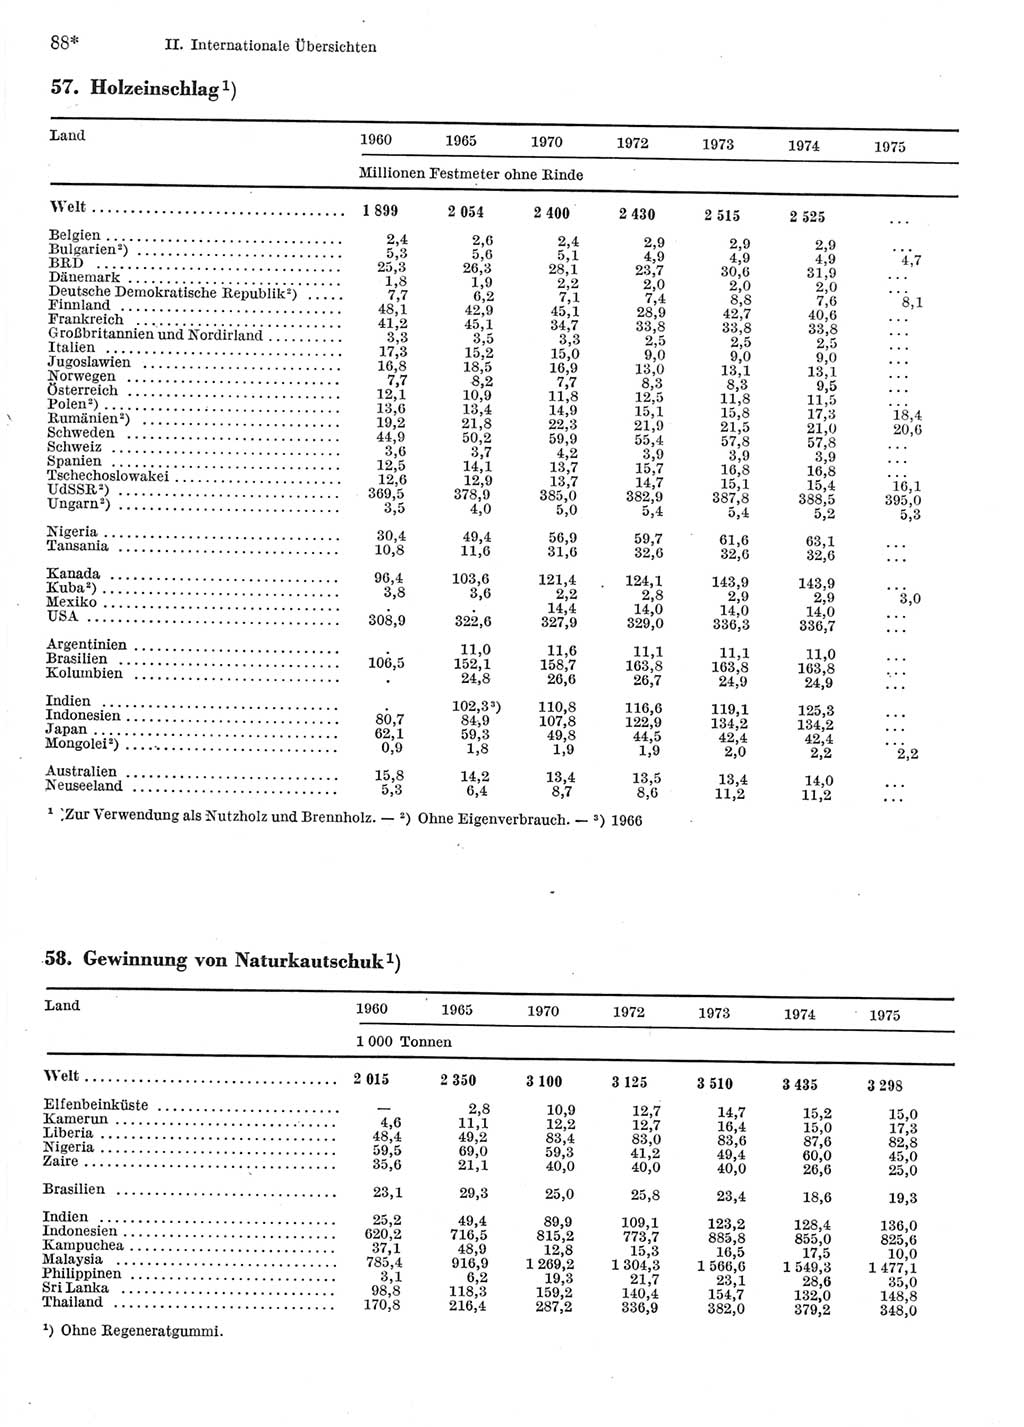 Statistisches Jahrbuch der Deutschen Demokratischen Republik (DDR) 1977, Seite 88 (Stat. Jb. DDR 1977, S. 88)